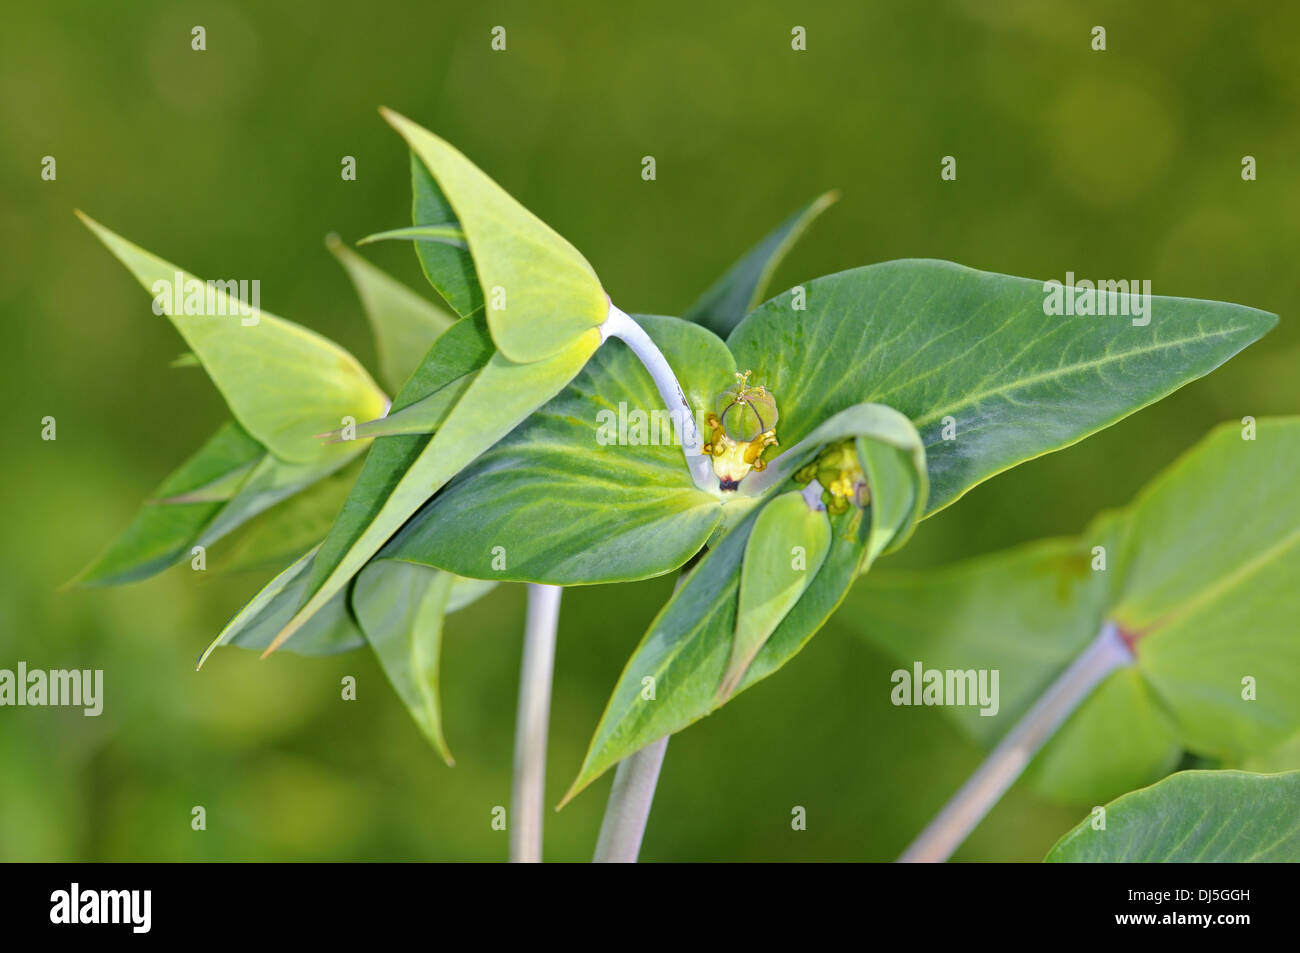 Caper spurge, Euphorbia lathyris Stock Photo